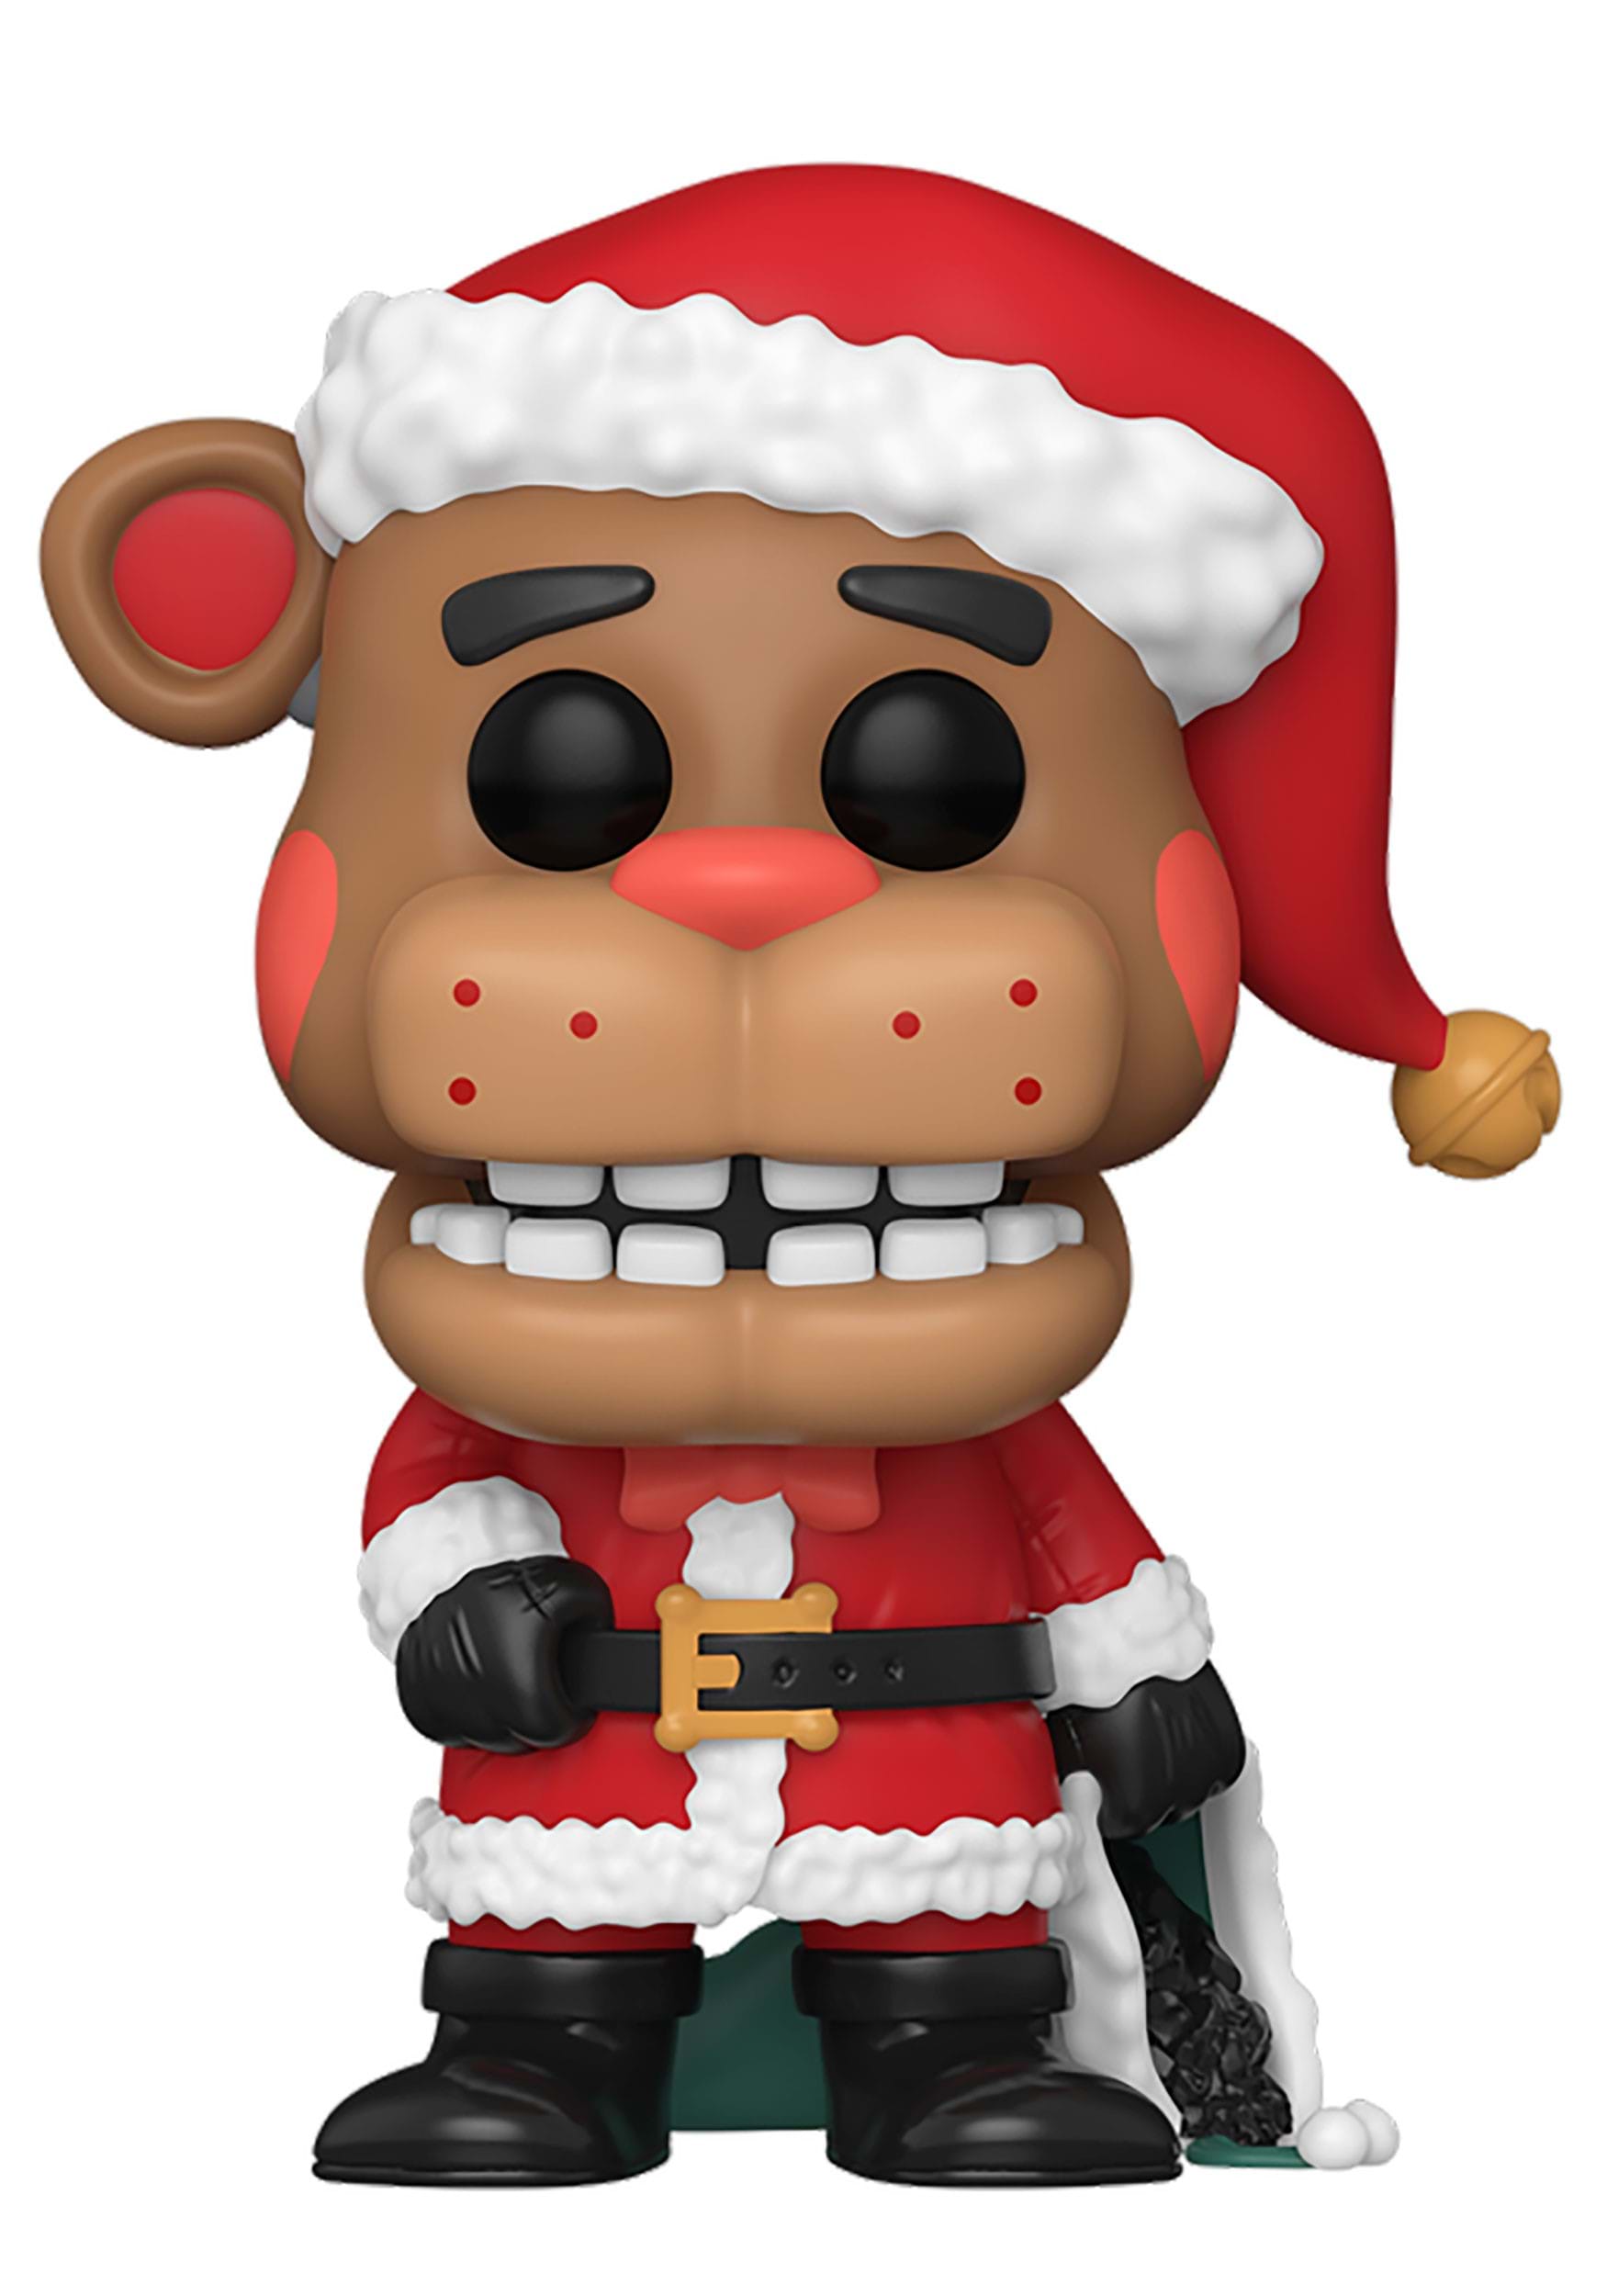 POP! Games: Five Nights at Freddy's - Holiday Freddy Fazbear